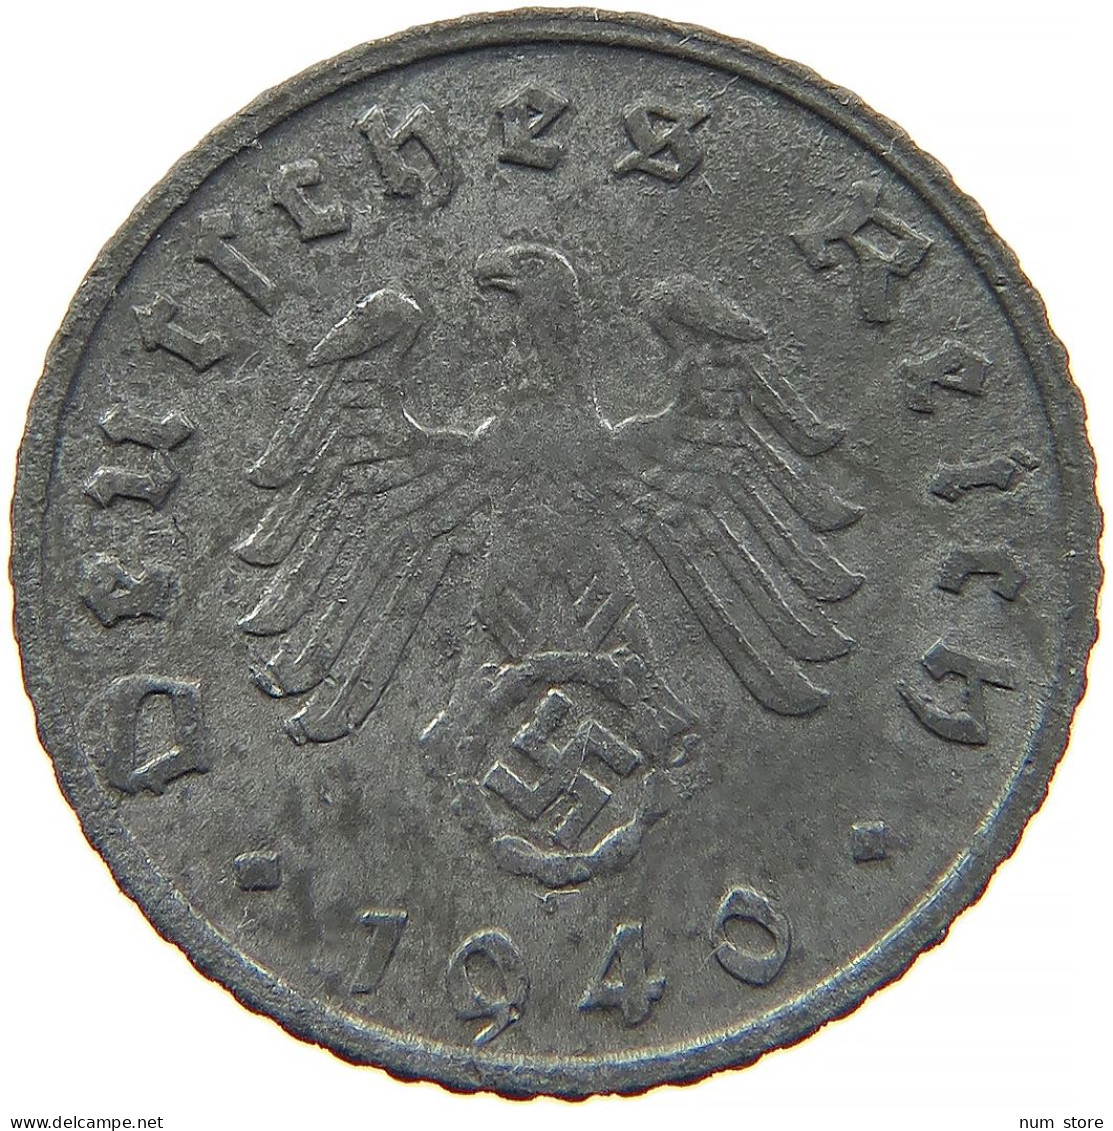 GERMANY 5 REICHSPFENNIG 1940 G #s091 0843 - 5 Reichspfennig